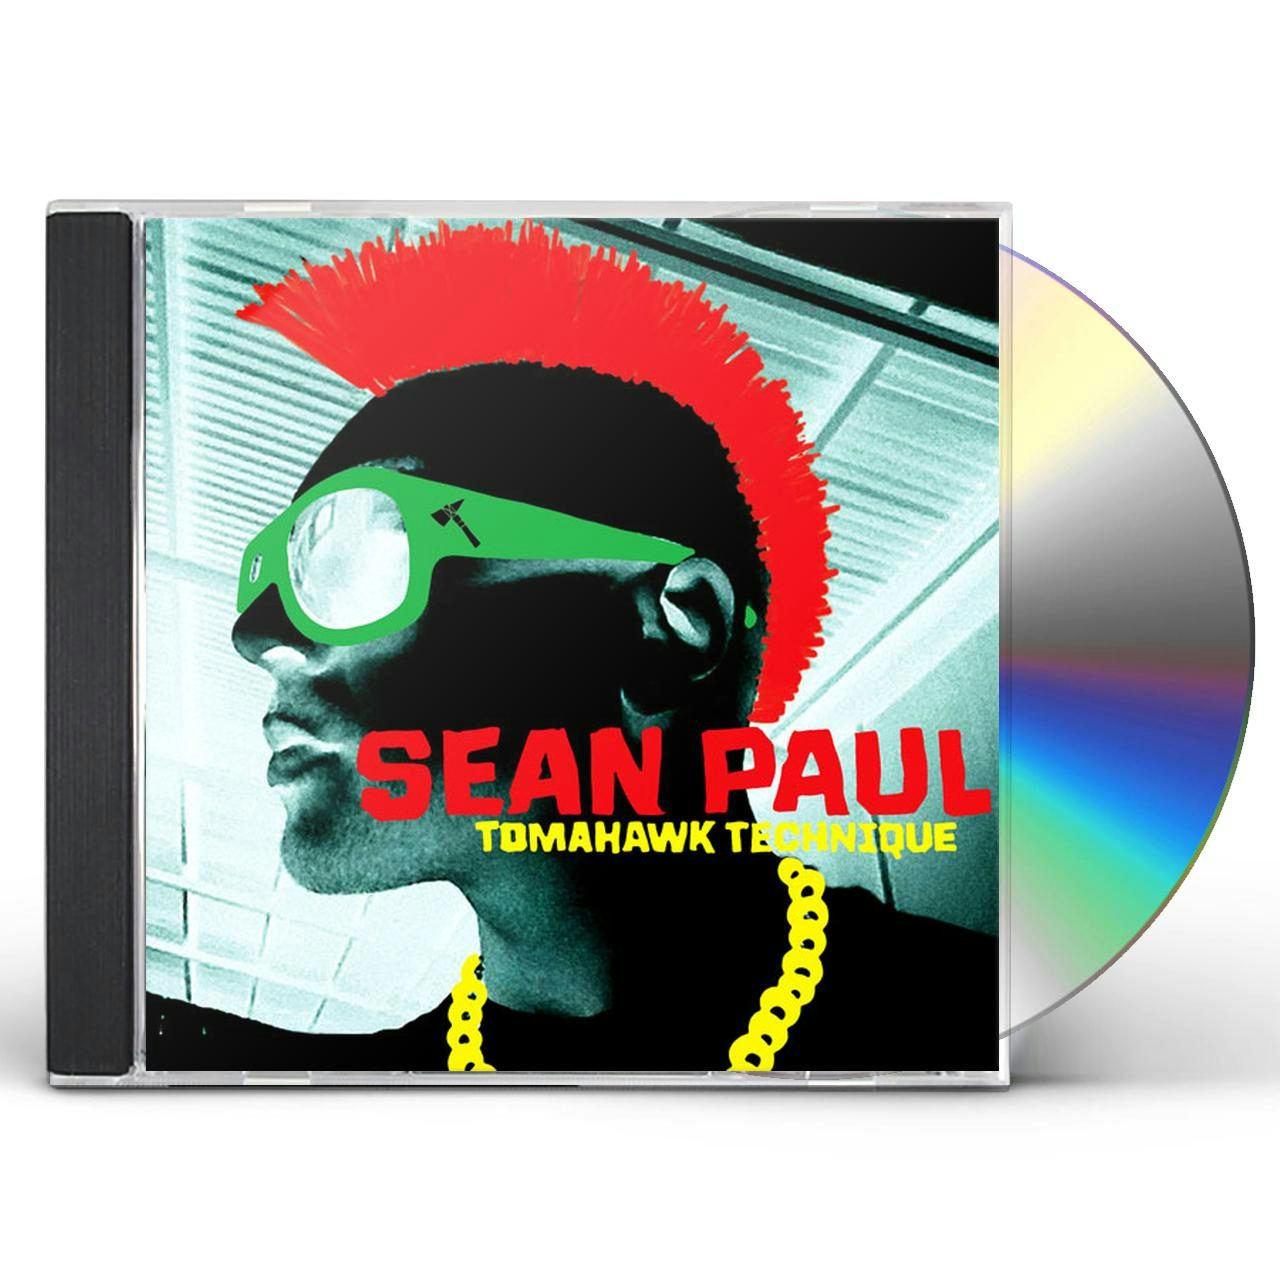 Sean Paul Dutty Rock (Crystal Clear) 2LP $31.77